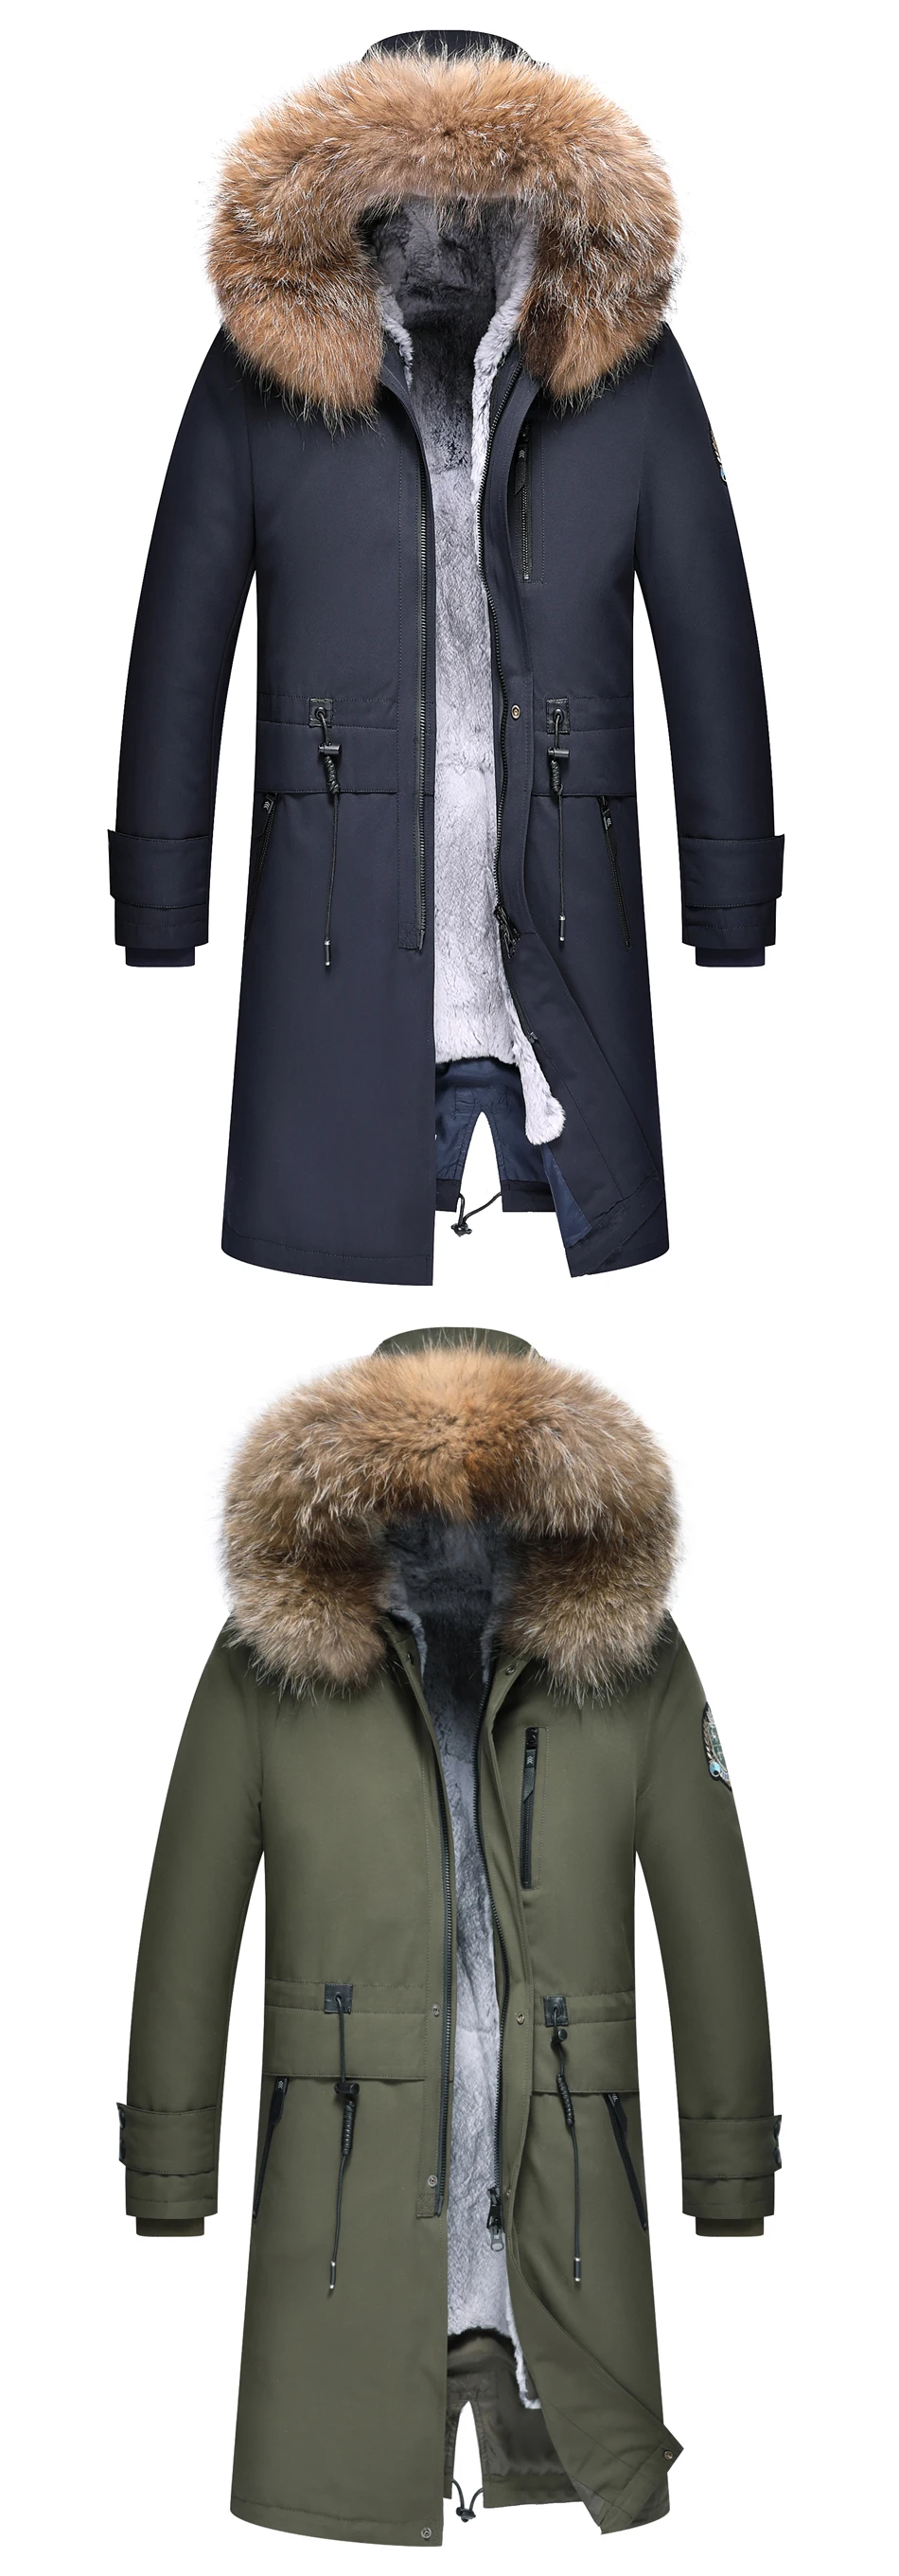 Высокое качество для мужчин зимнее пальто парка Аляска толстые теплые стеганые пальто длинная куртка с капюшоном длинное Wnter пальто для мужчин натуральный мех енота